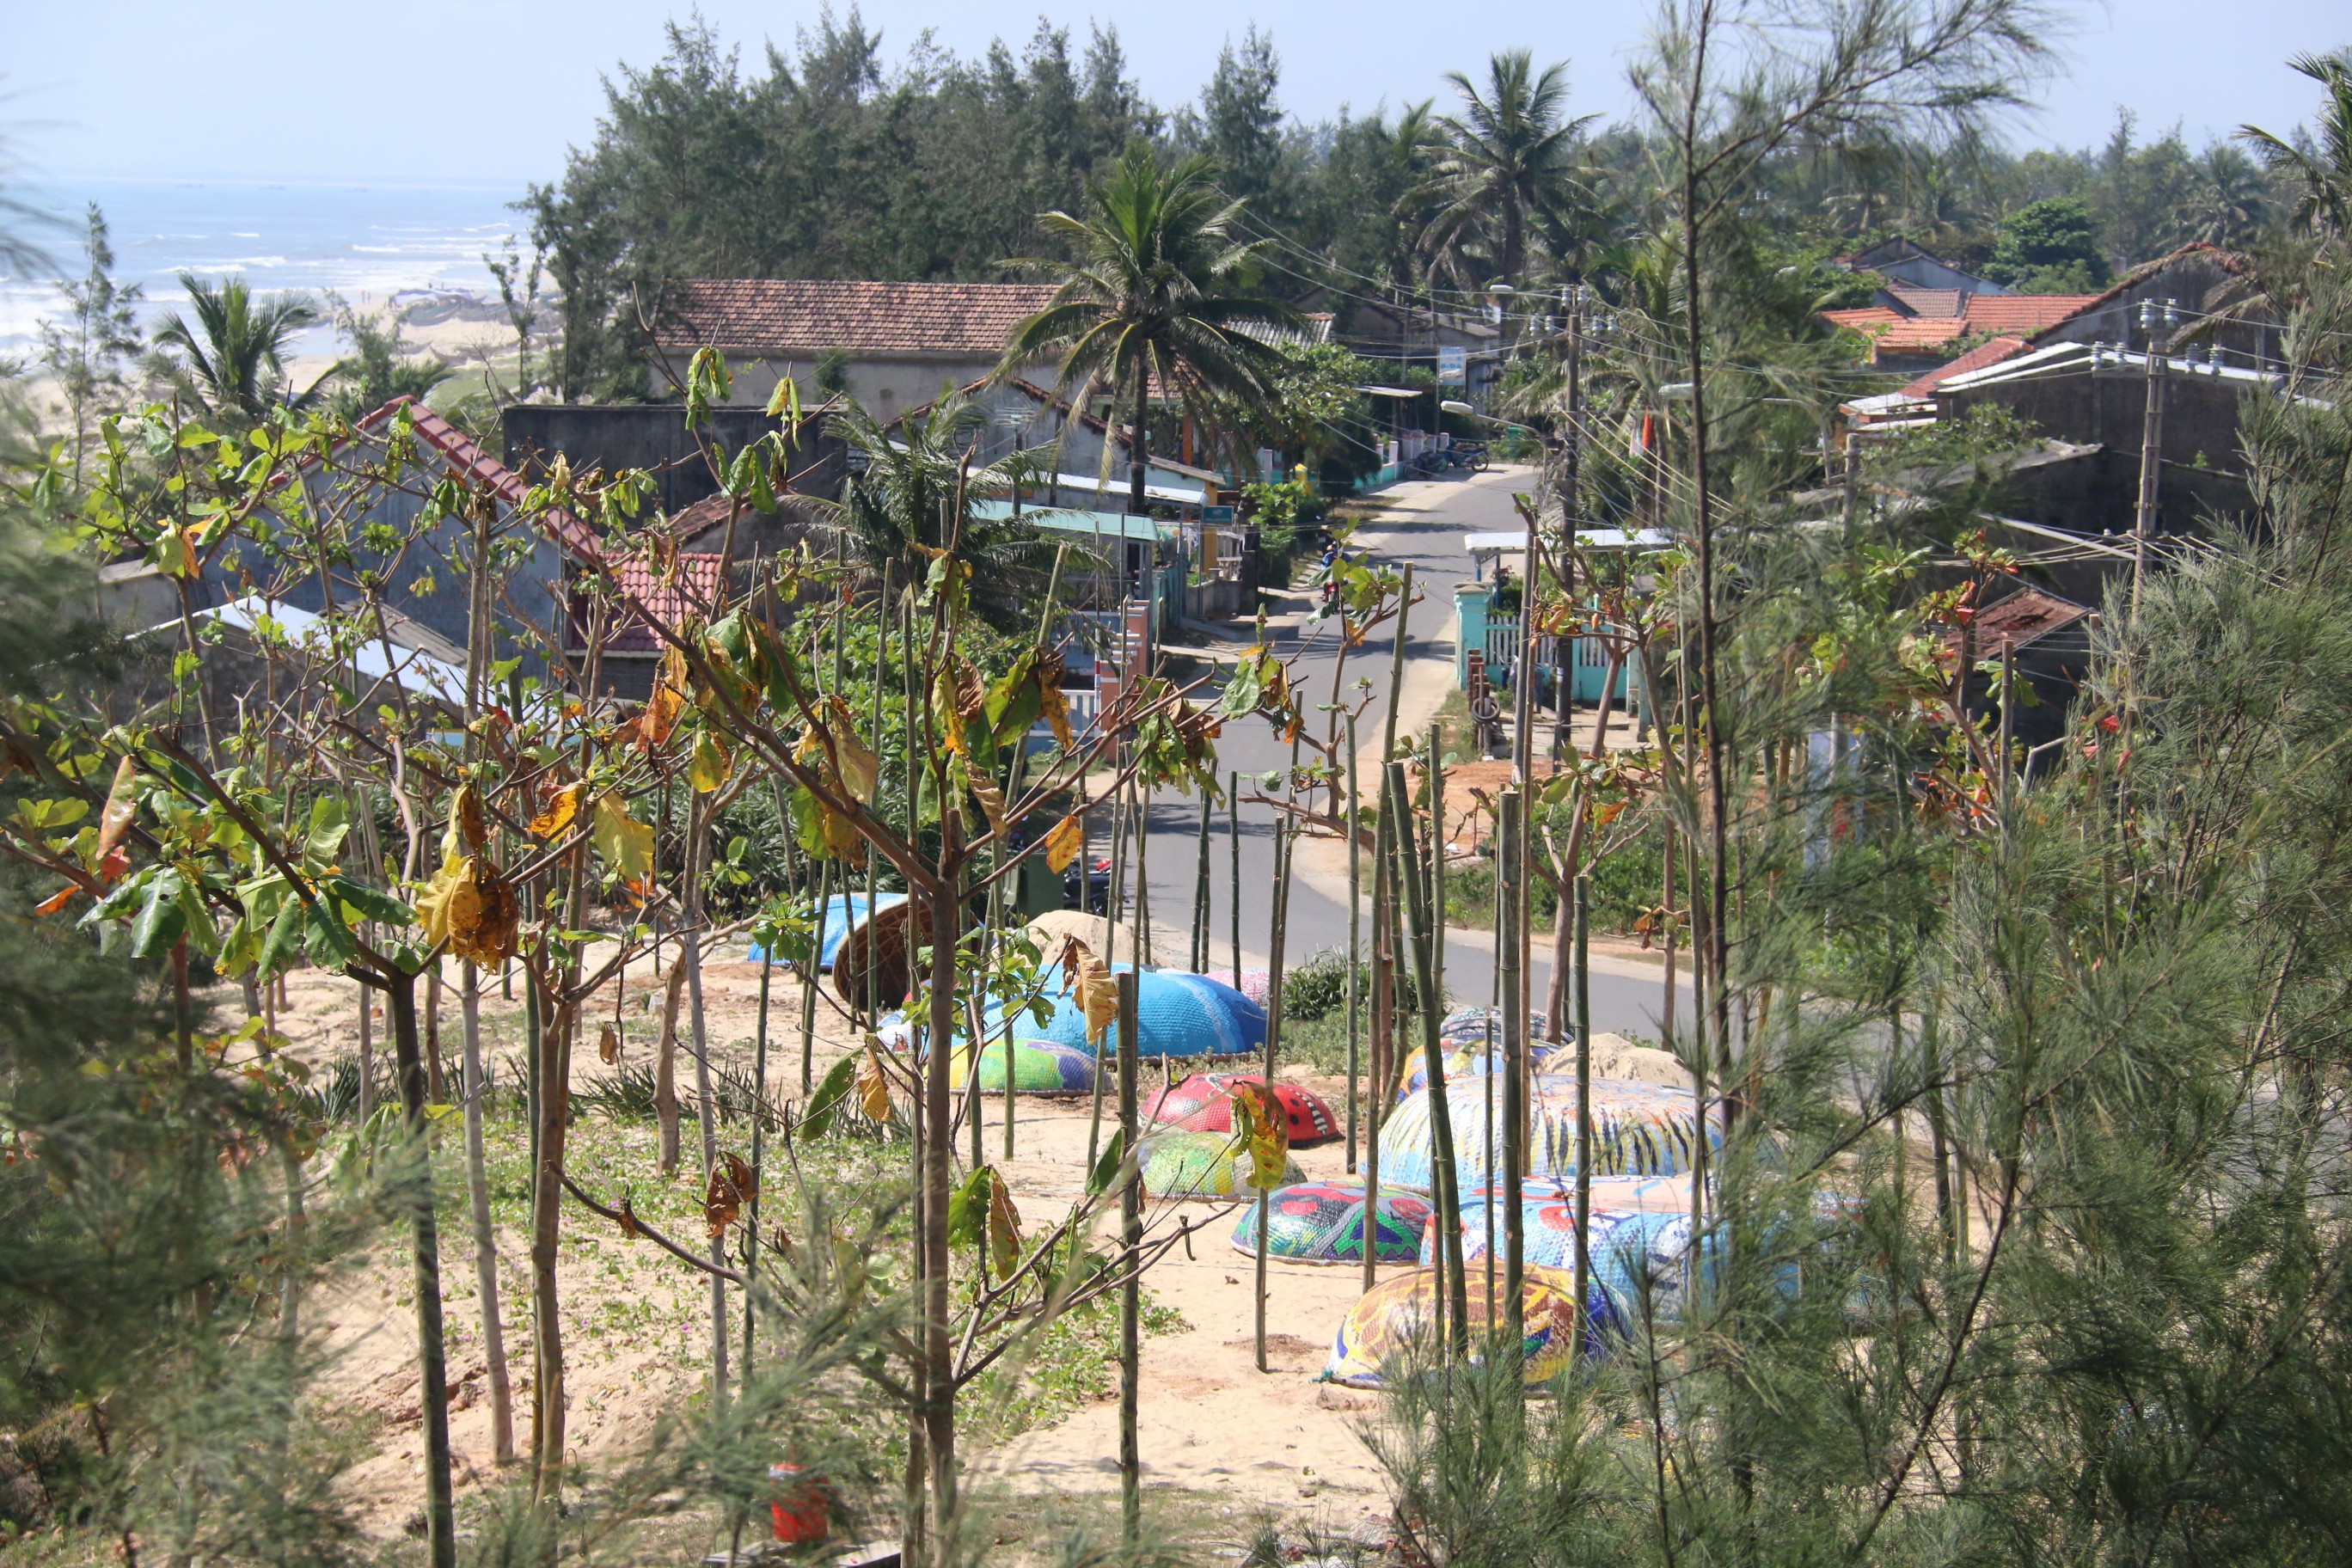 
Nhiều người dân bán nhà ven biển rồi vào làng mua đất xây nhà
